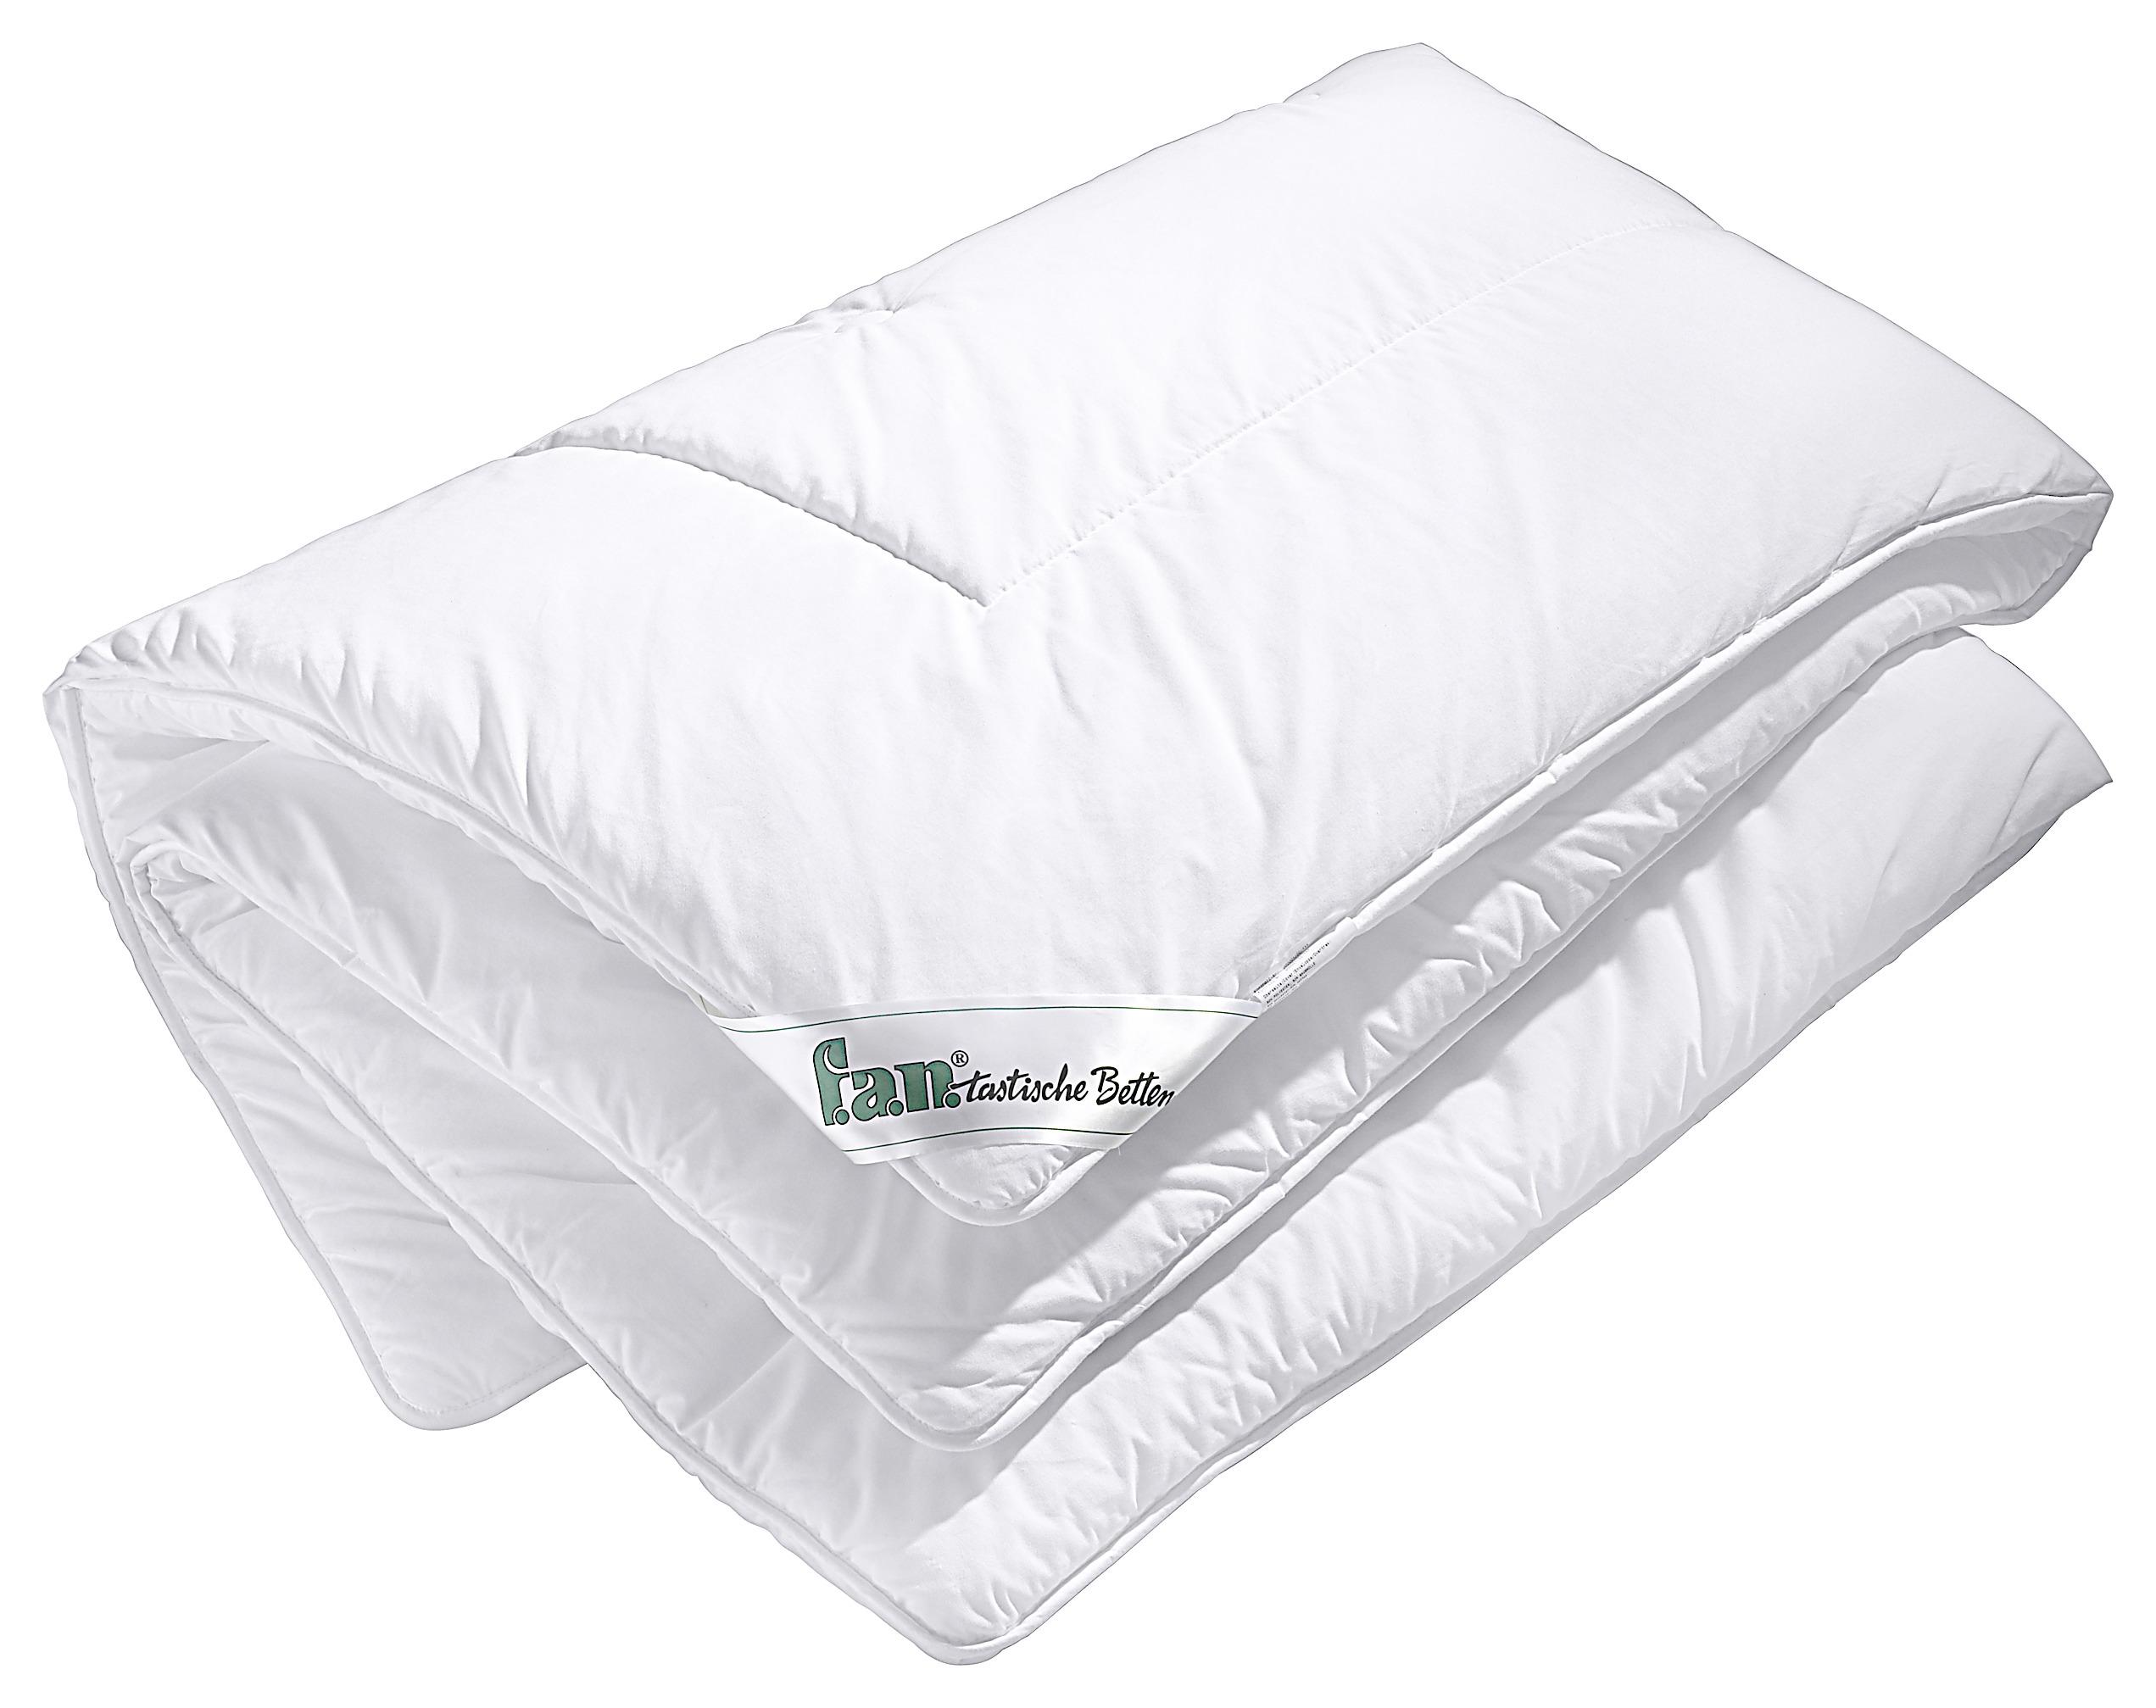 Vierjahreszeitendecke Schlaf Gut Tencel Extrawarm 140x200cm - Weiß, KONVENTIONELL, Textil (140/200cm) - FAN